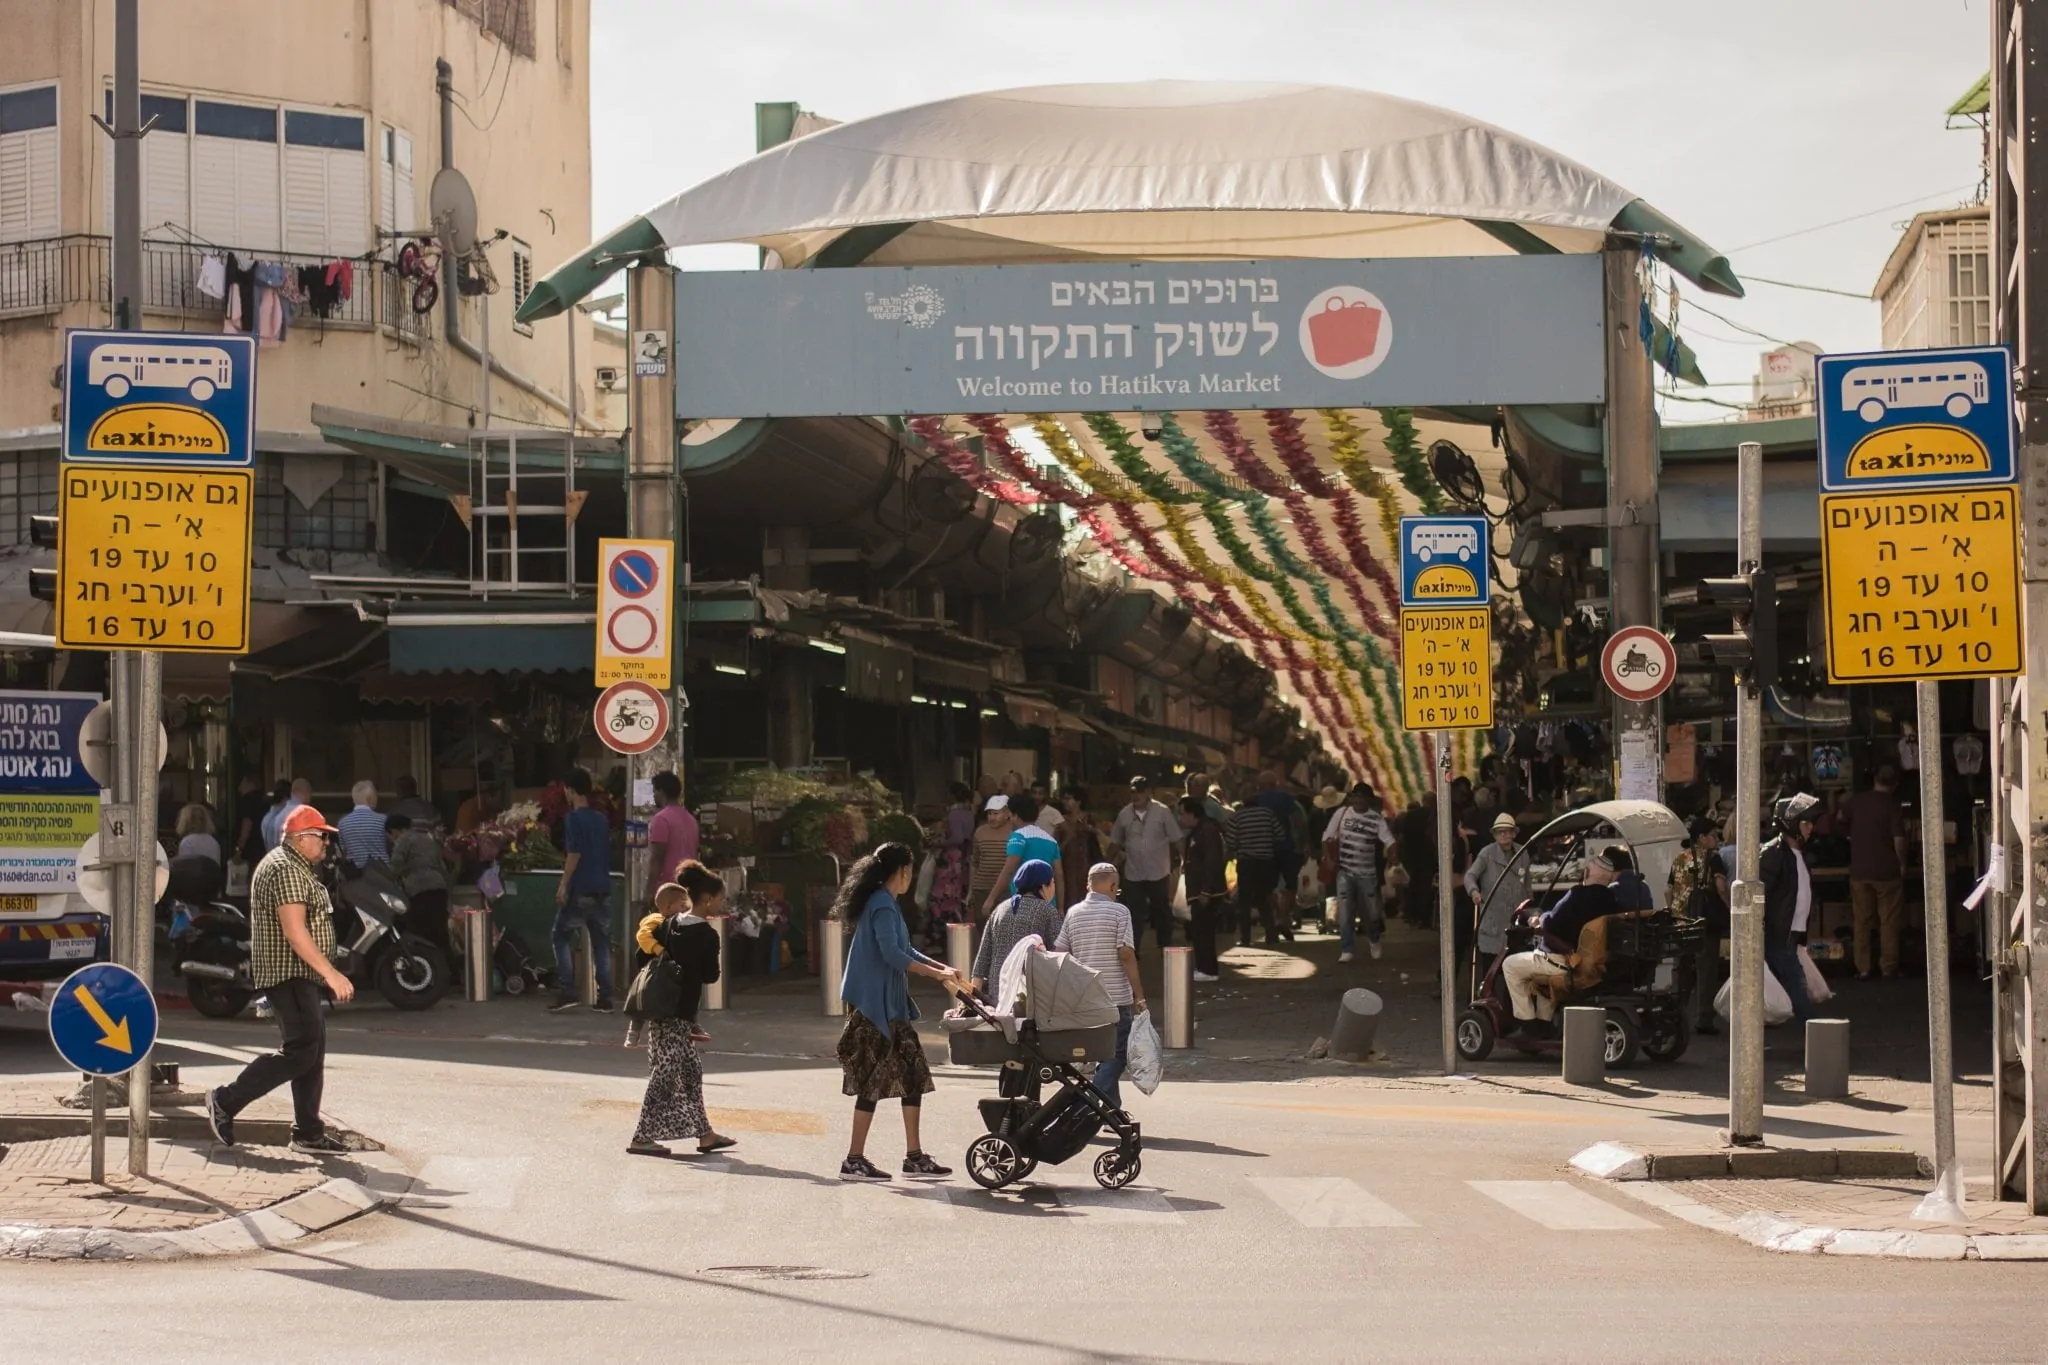 הכניסה לשוק התקווה מרחוב האצ״ל, תל אביב